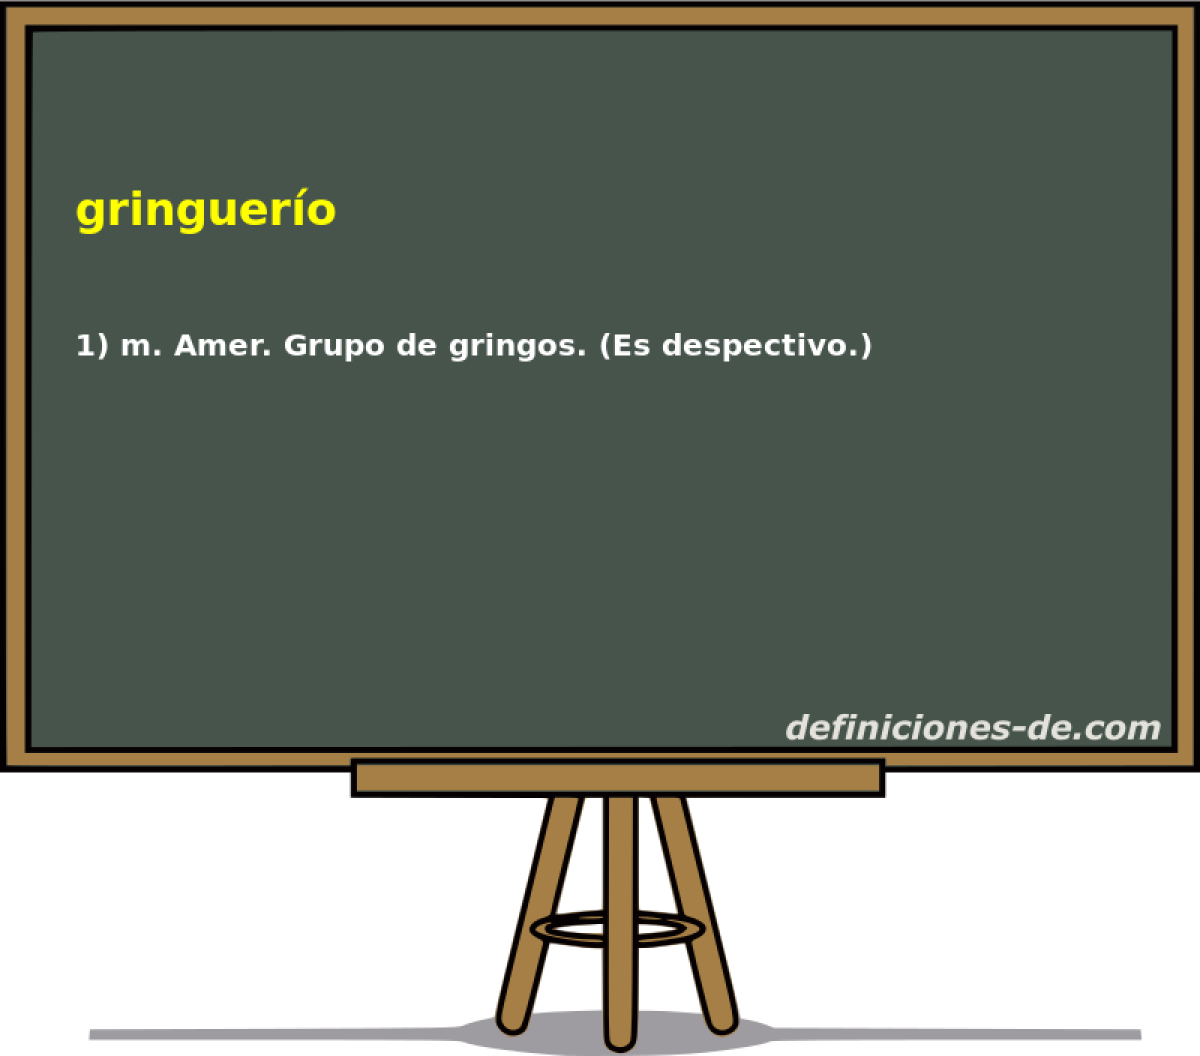 gringuero 